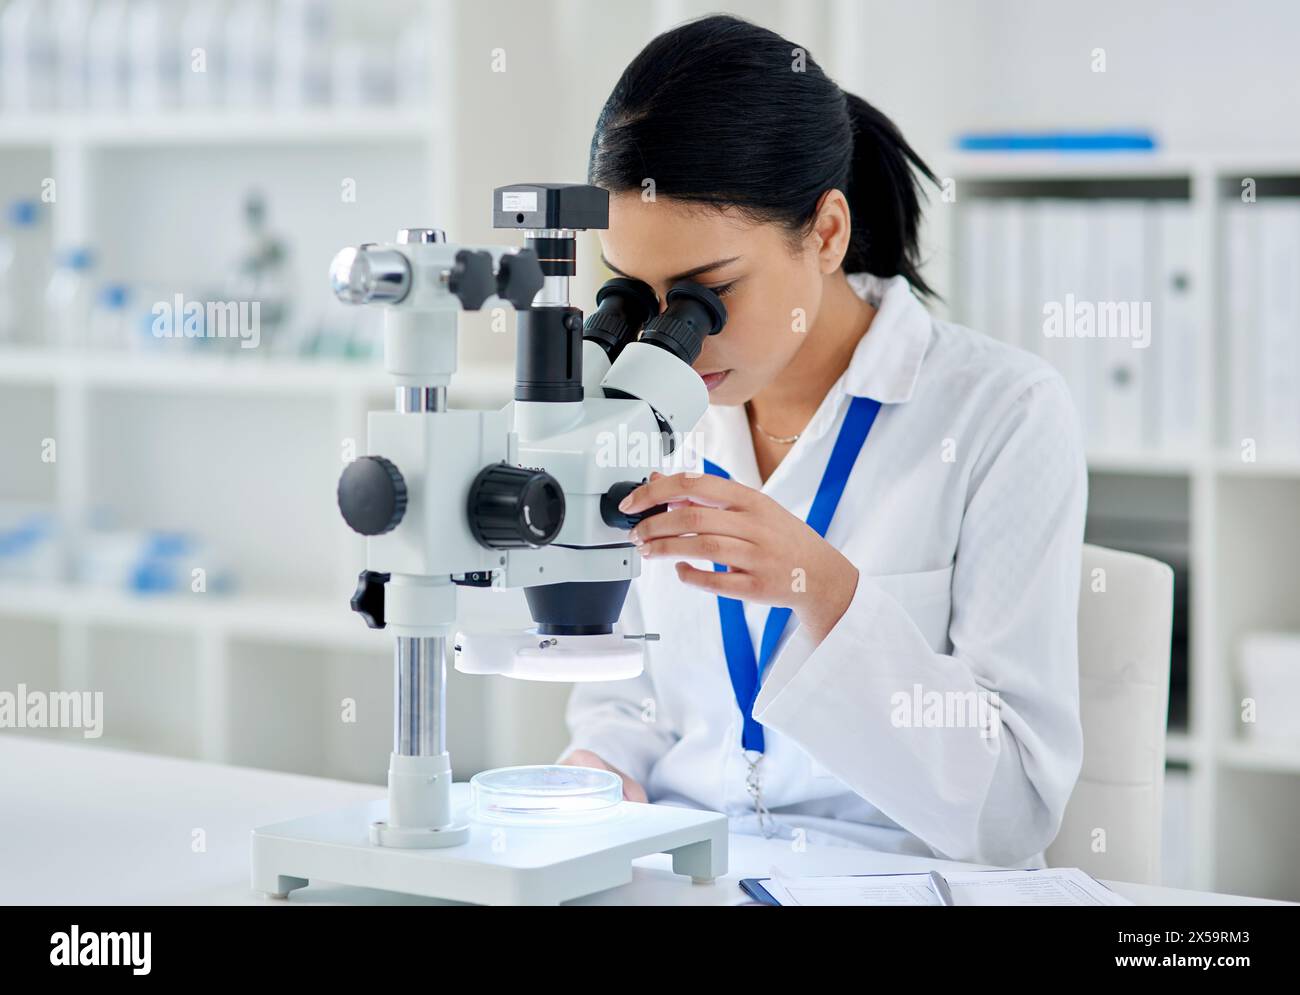 Arzt, Mikroskop und Pharmazie für Medizin oder Forschung, Experiment und Virusanalyse im Labor für Gesundheit. Frau, DNA und Untersuchung Stockfoto